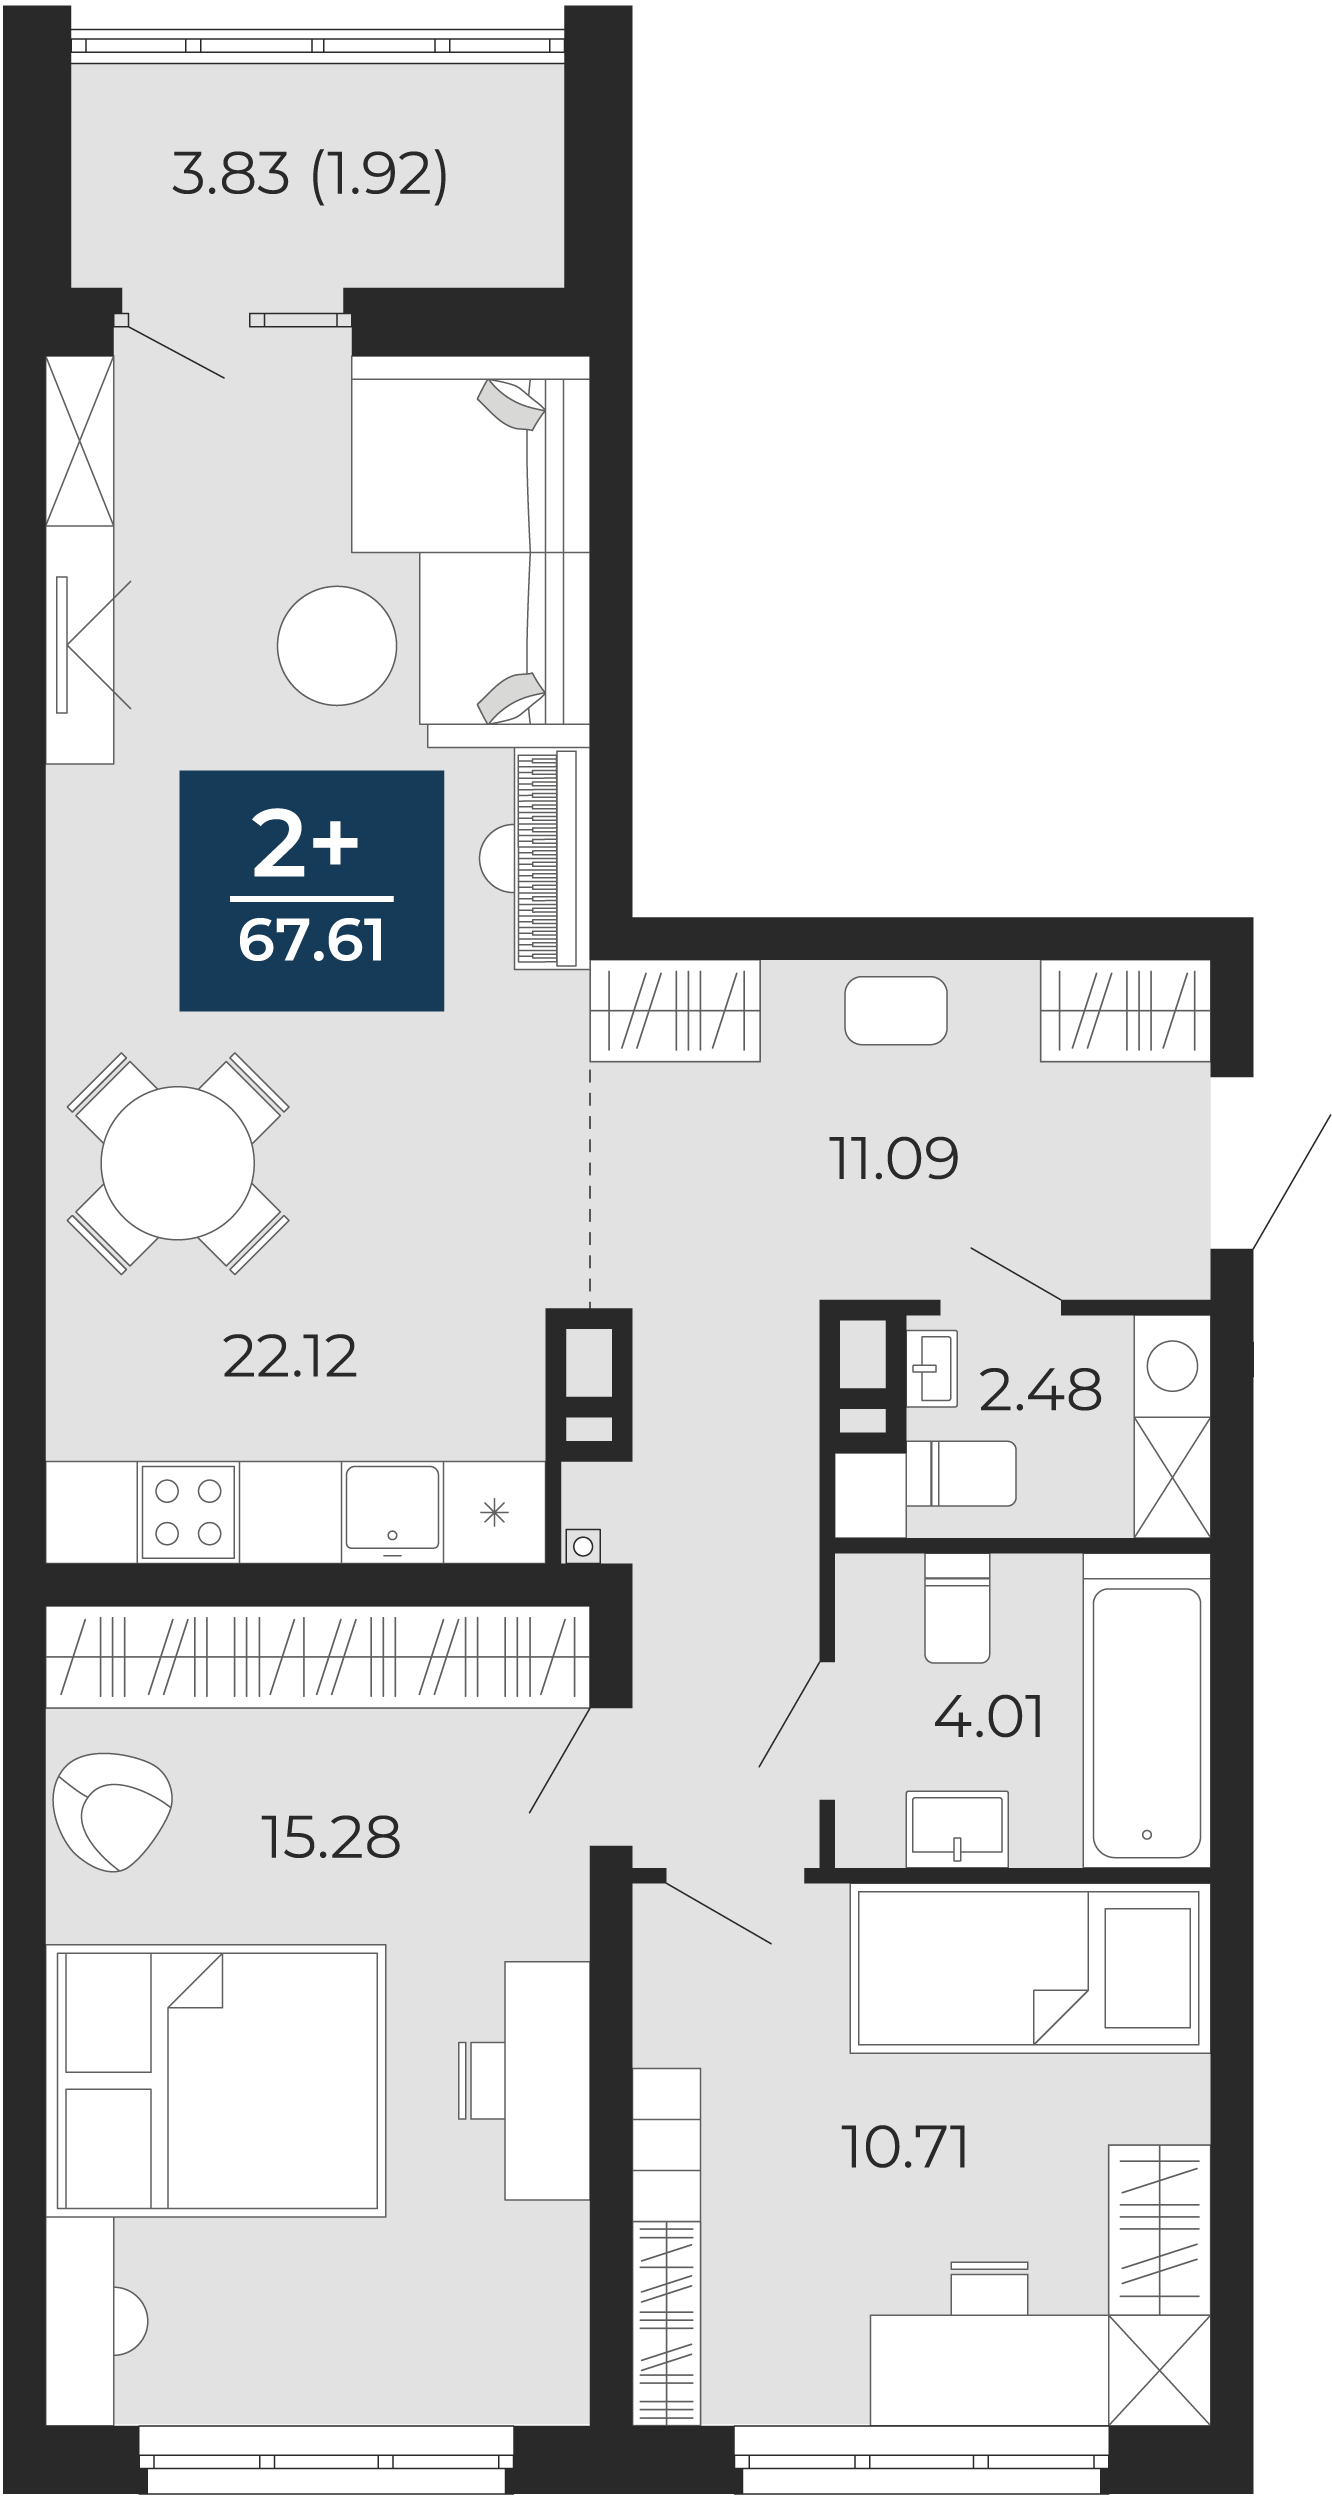 Квартира № 310, 2-комнатная, 67.61 кв. м, 4 этаж